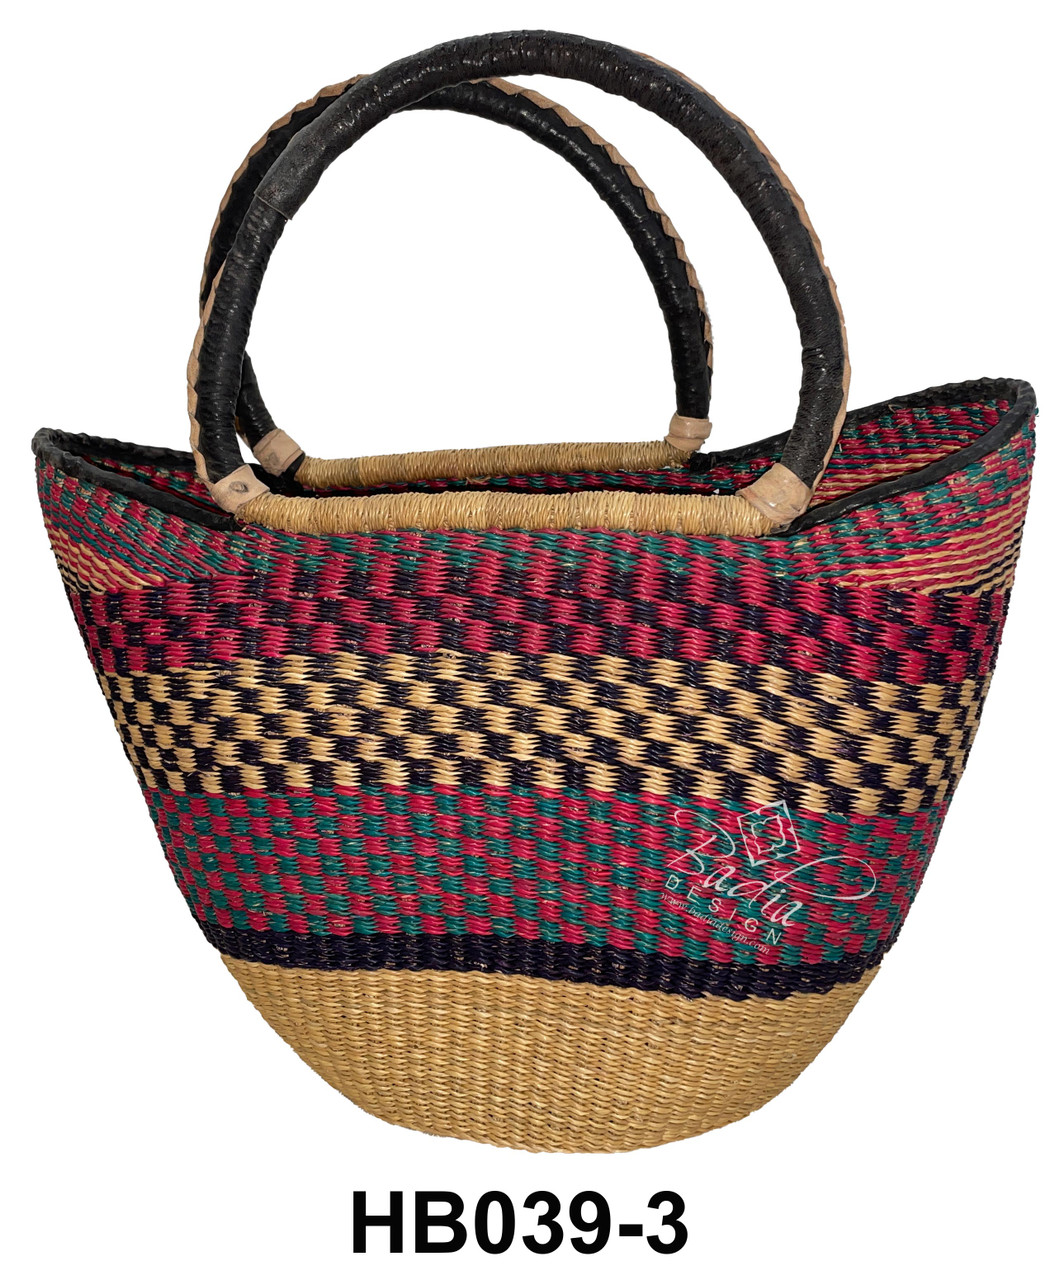 Handwoven African Straw Handbags - HB039